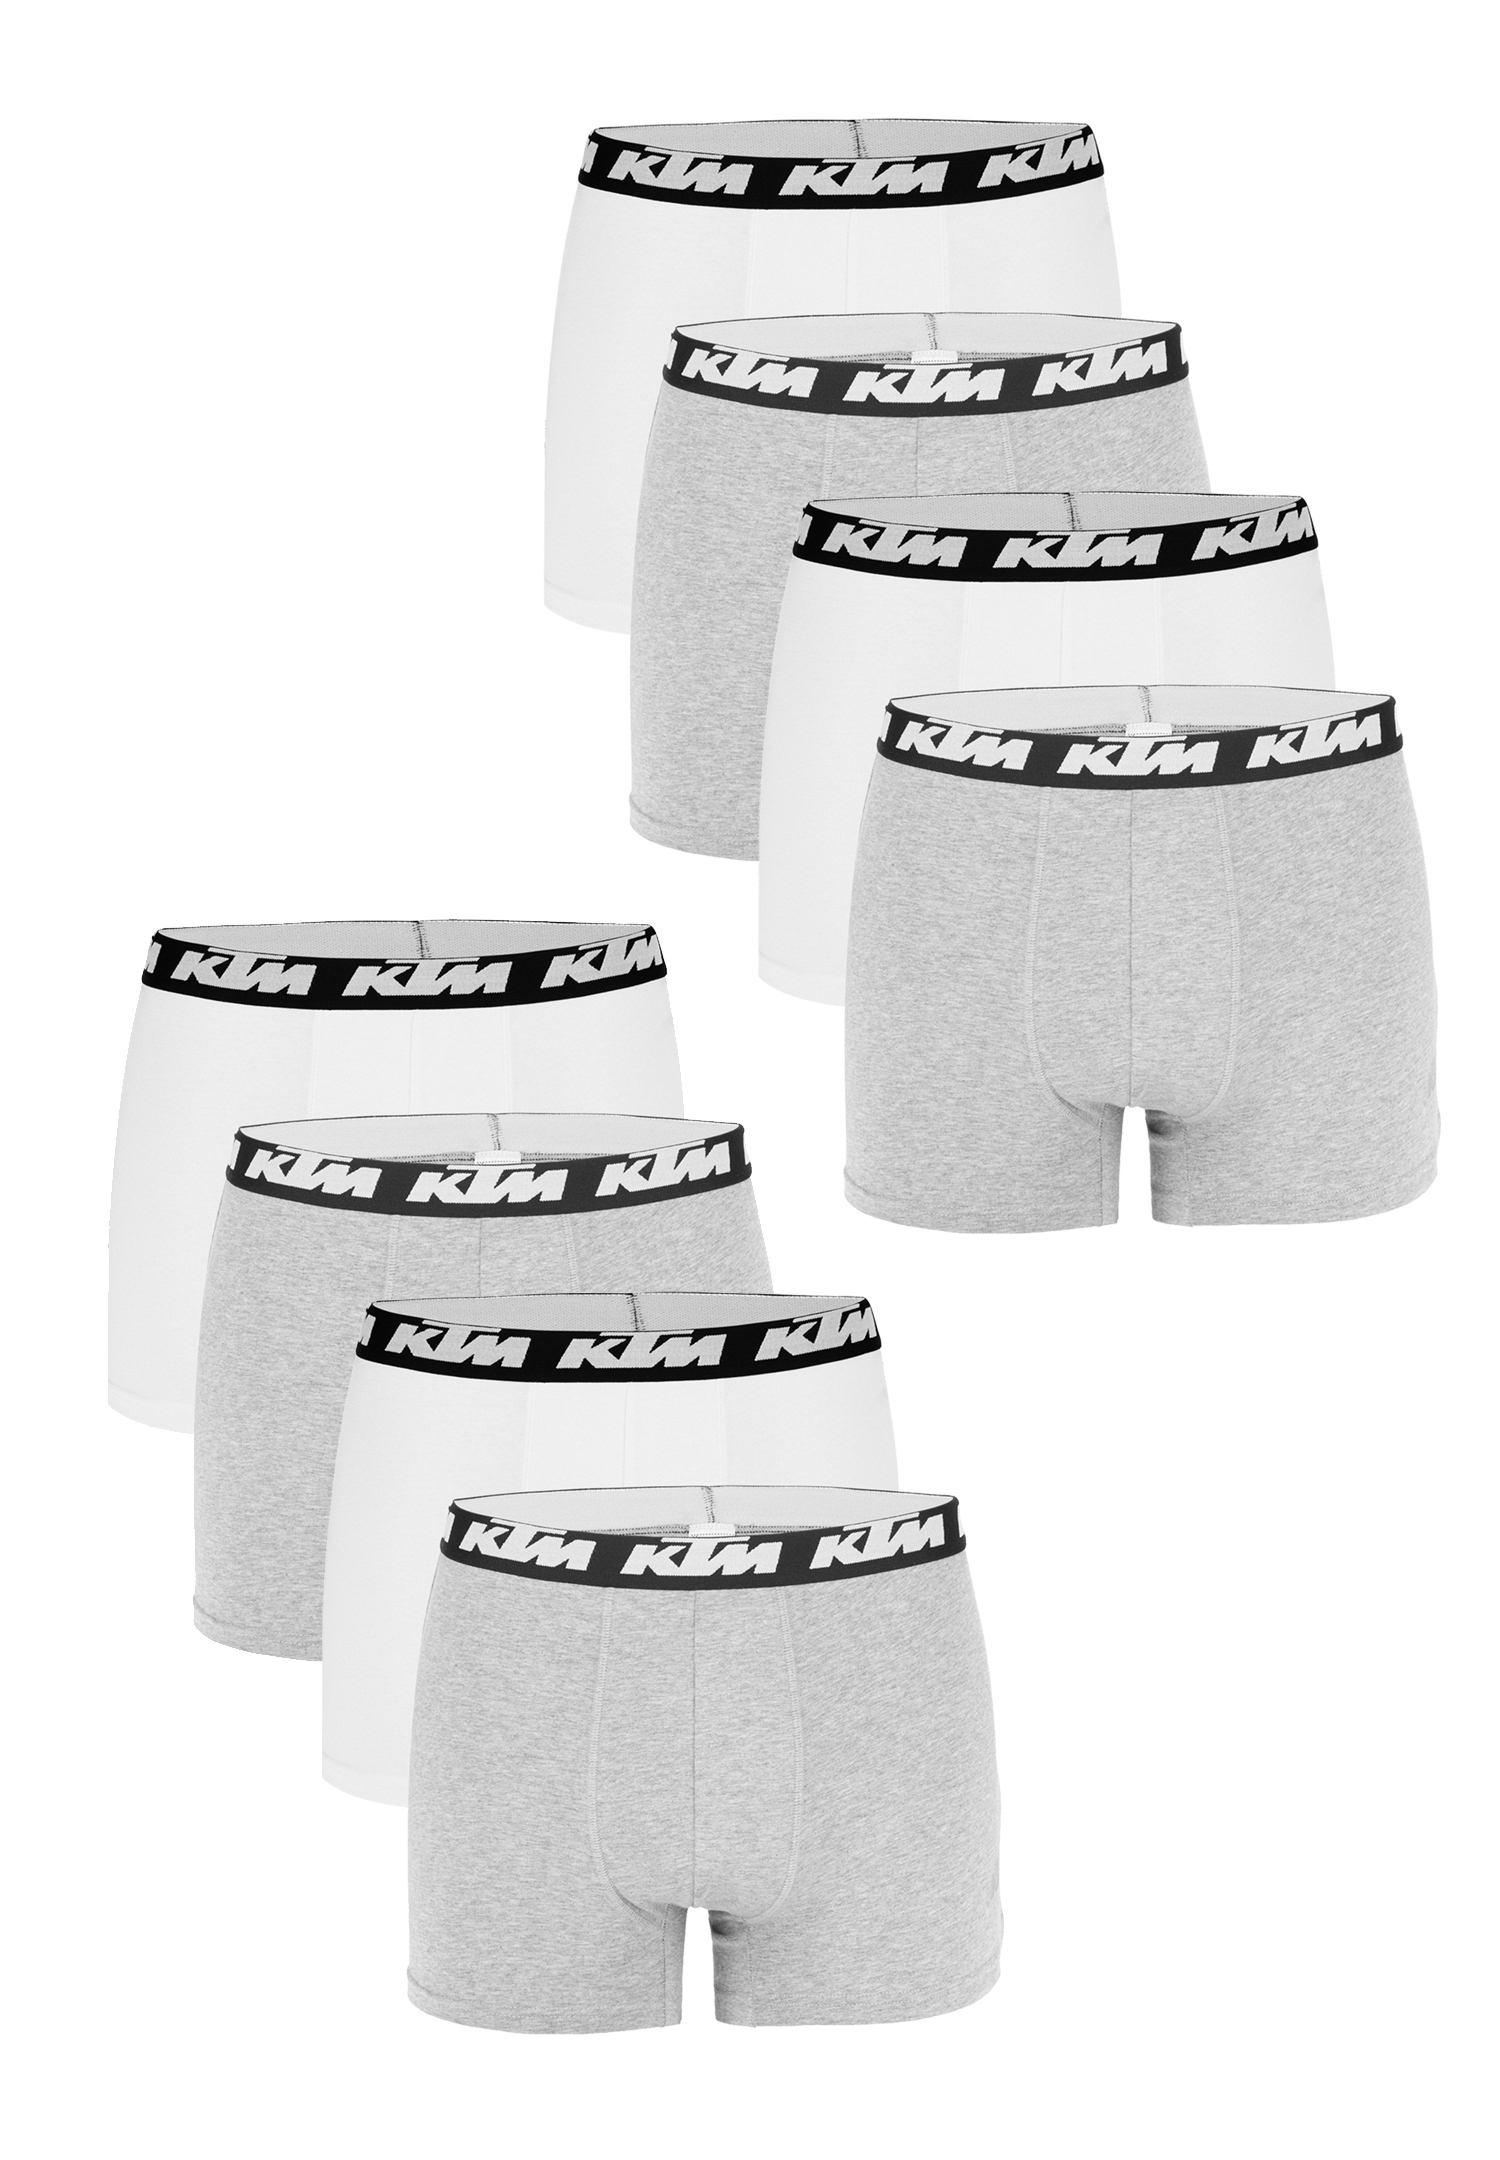 KTM by Freegun Boxershorts für Herren Unterwäsche Pant Men´s Boxer 6 er Pack, Farbe:Light Grey / White, Bekleidungsgröße:L